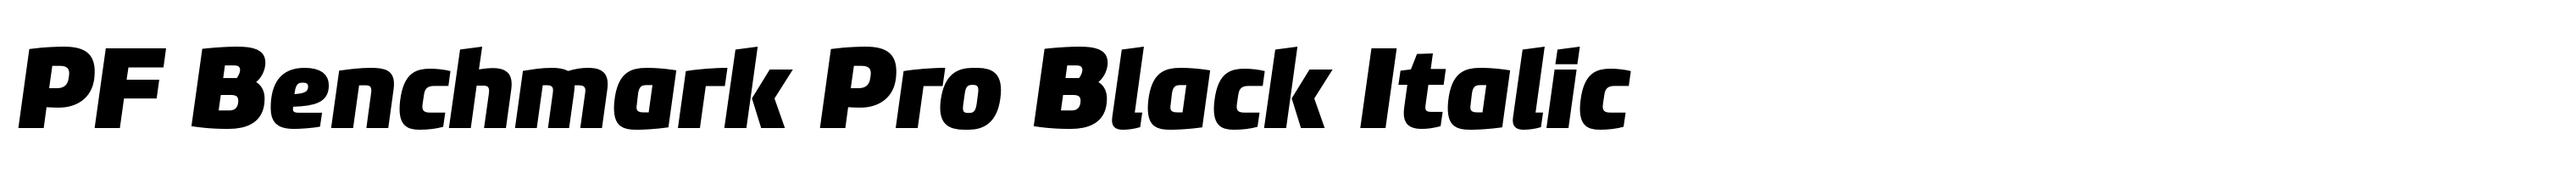 PF Benchmark Pro Black Italic